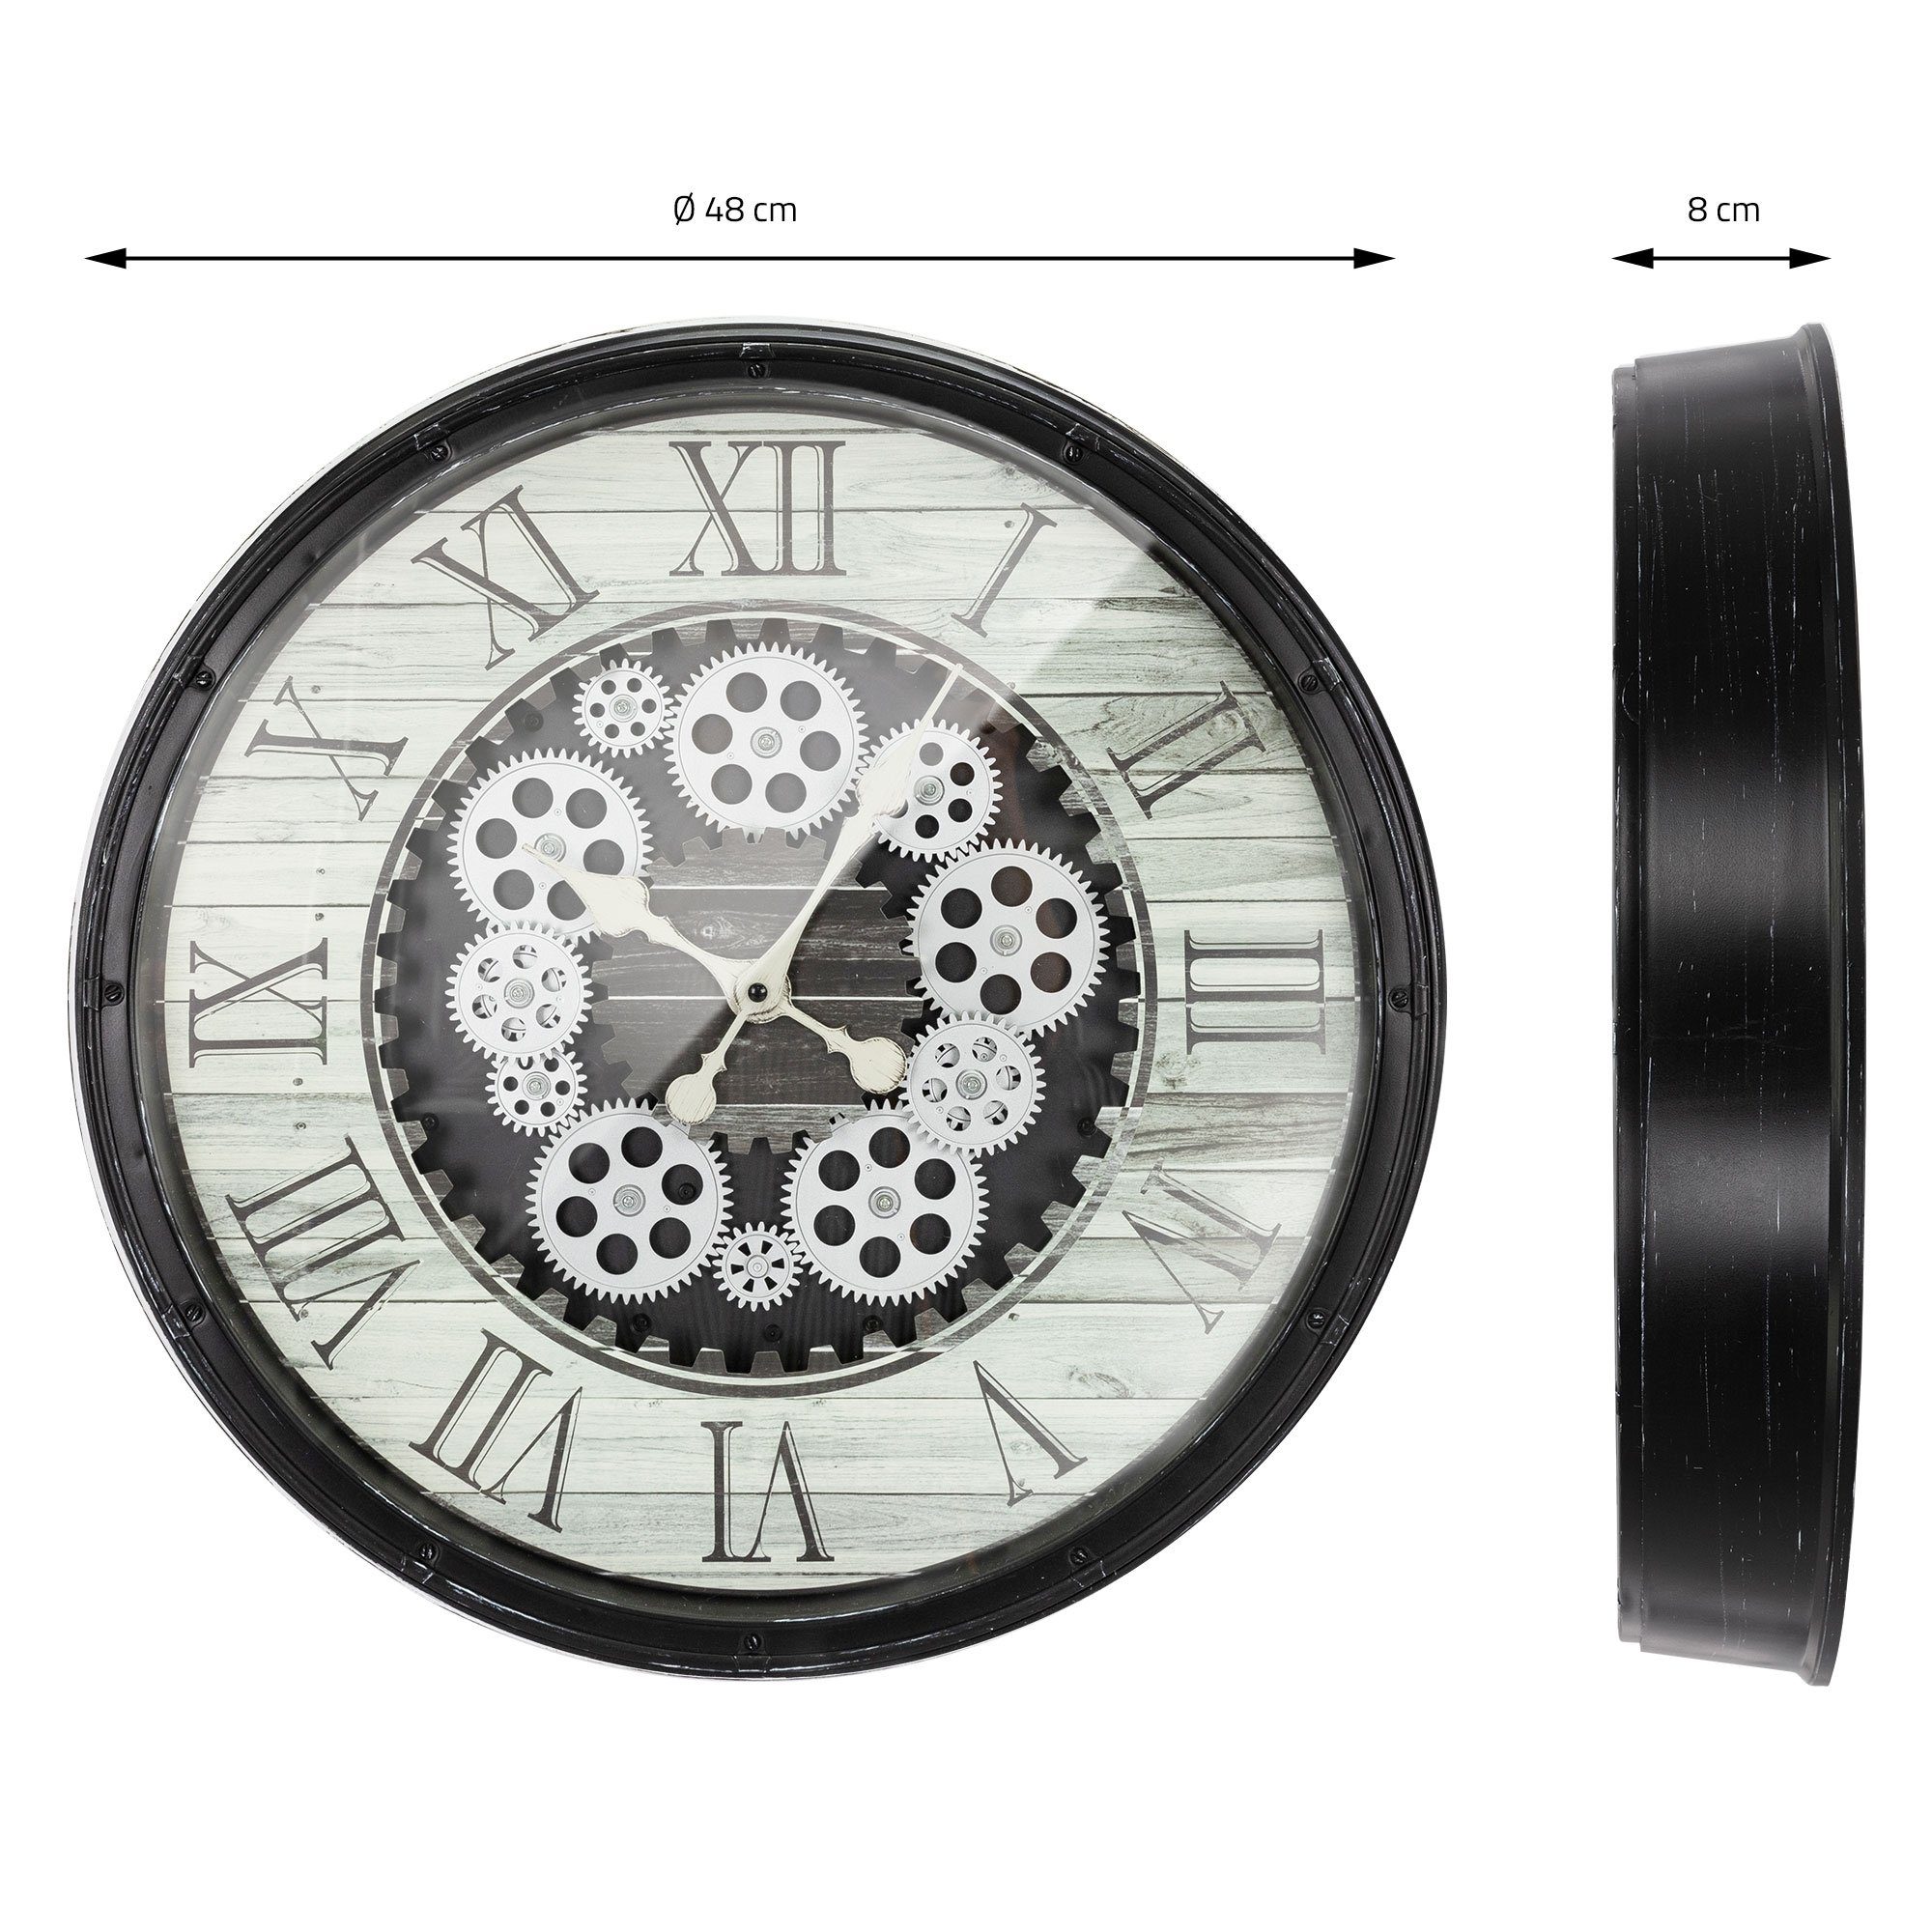 ECD Germany Schwar Dekor MDF-Holz Zahlen Wanduhr (Rund Analoge) Ø48cm Industriell Design Dekorative Leise Römische Uhr Uhr